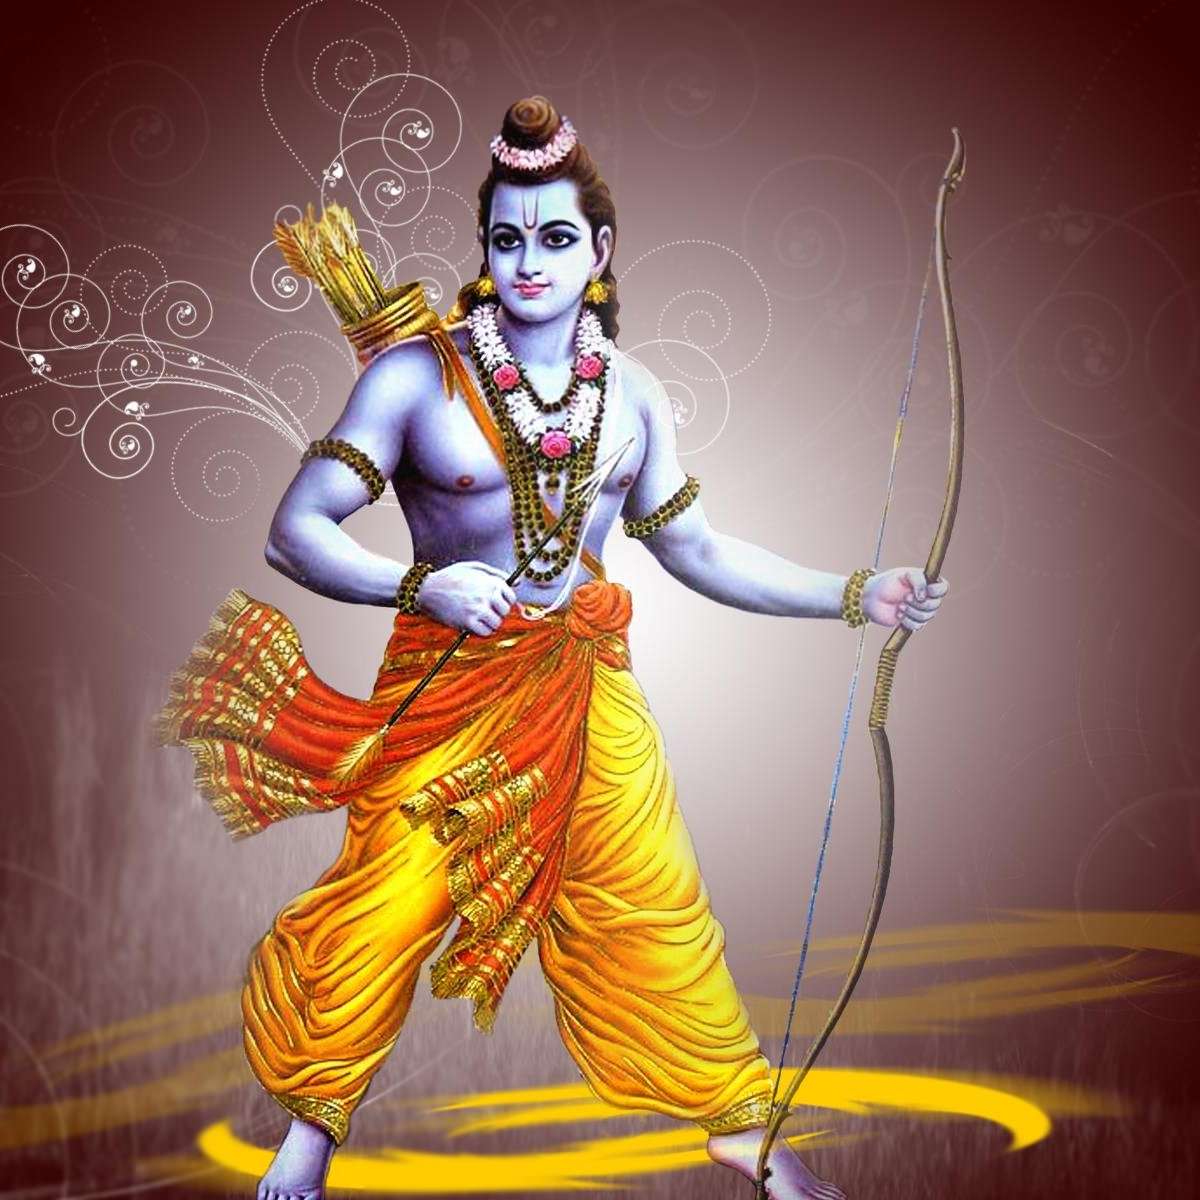 Rama - Quem foi o homem considerado o símbolo da fraternidade